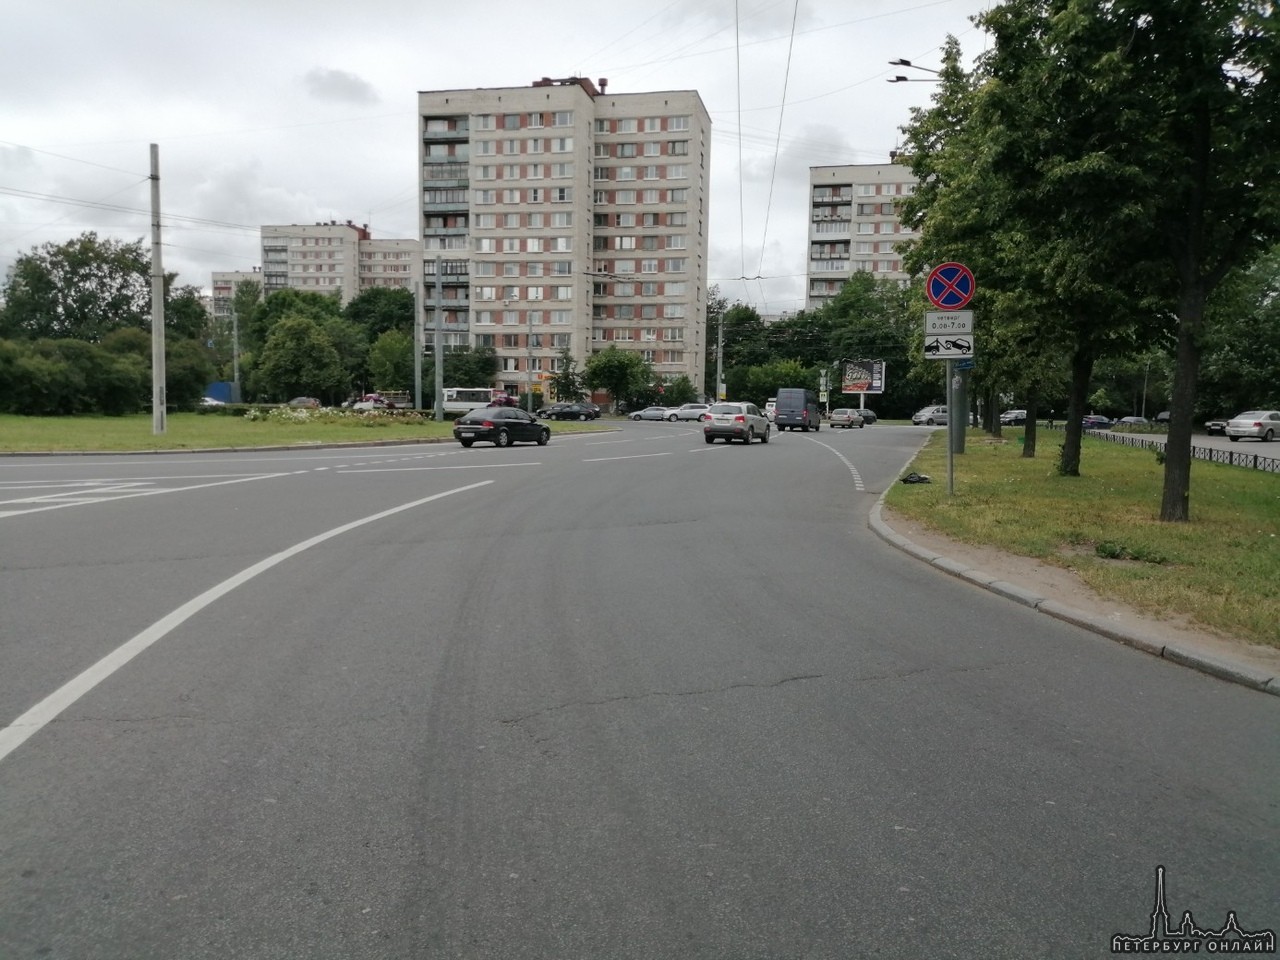 25 июня в 22:45 я двигался на Peugeot от улицы Зины Портновой по проспекту Ветеранов, заезжая на кругов...